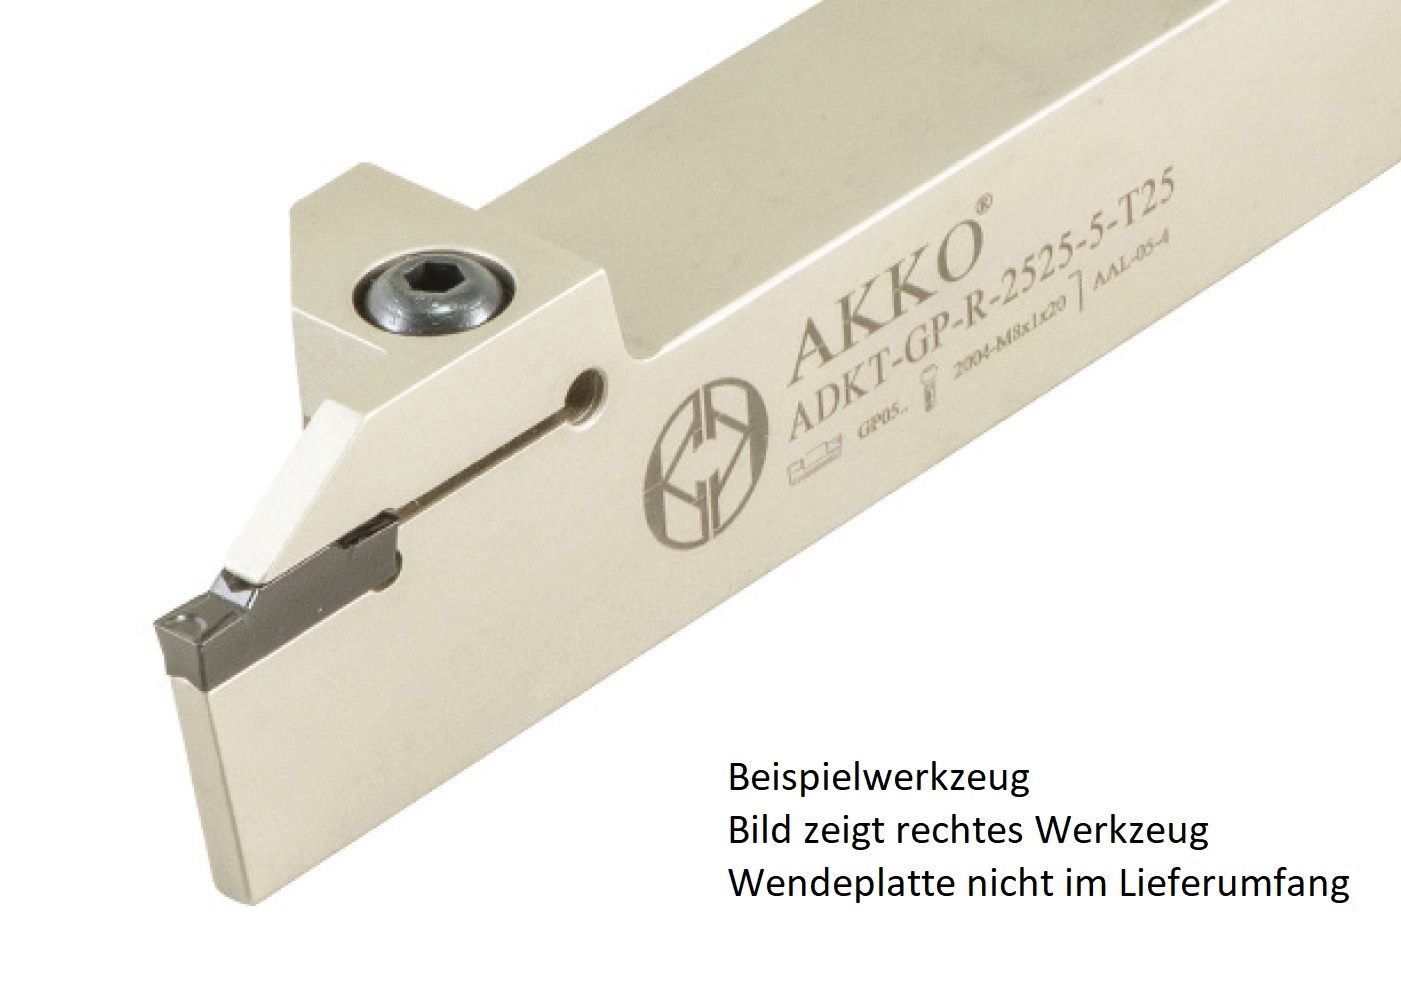 AKKO-Außen-Stechhalter, kompatibel mit Palbit-Stechplatte GP-4
links, Schaft 25 x 25 mm